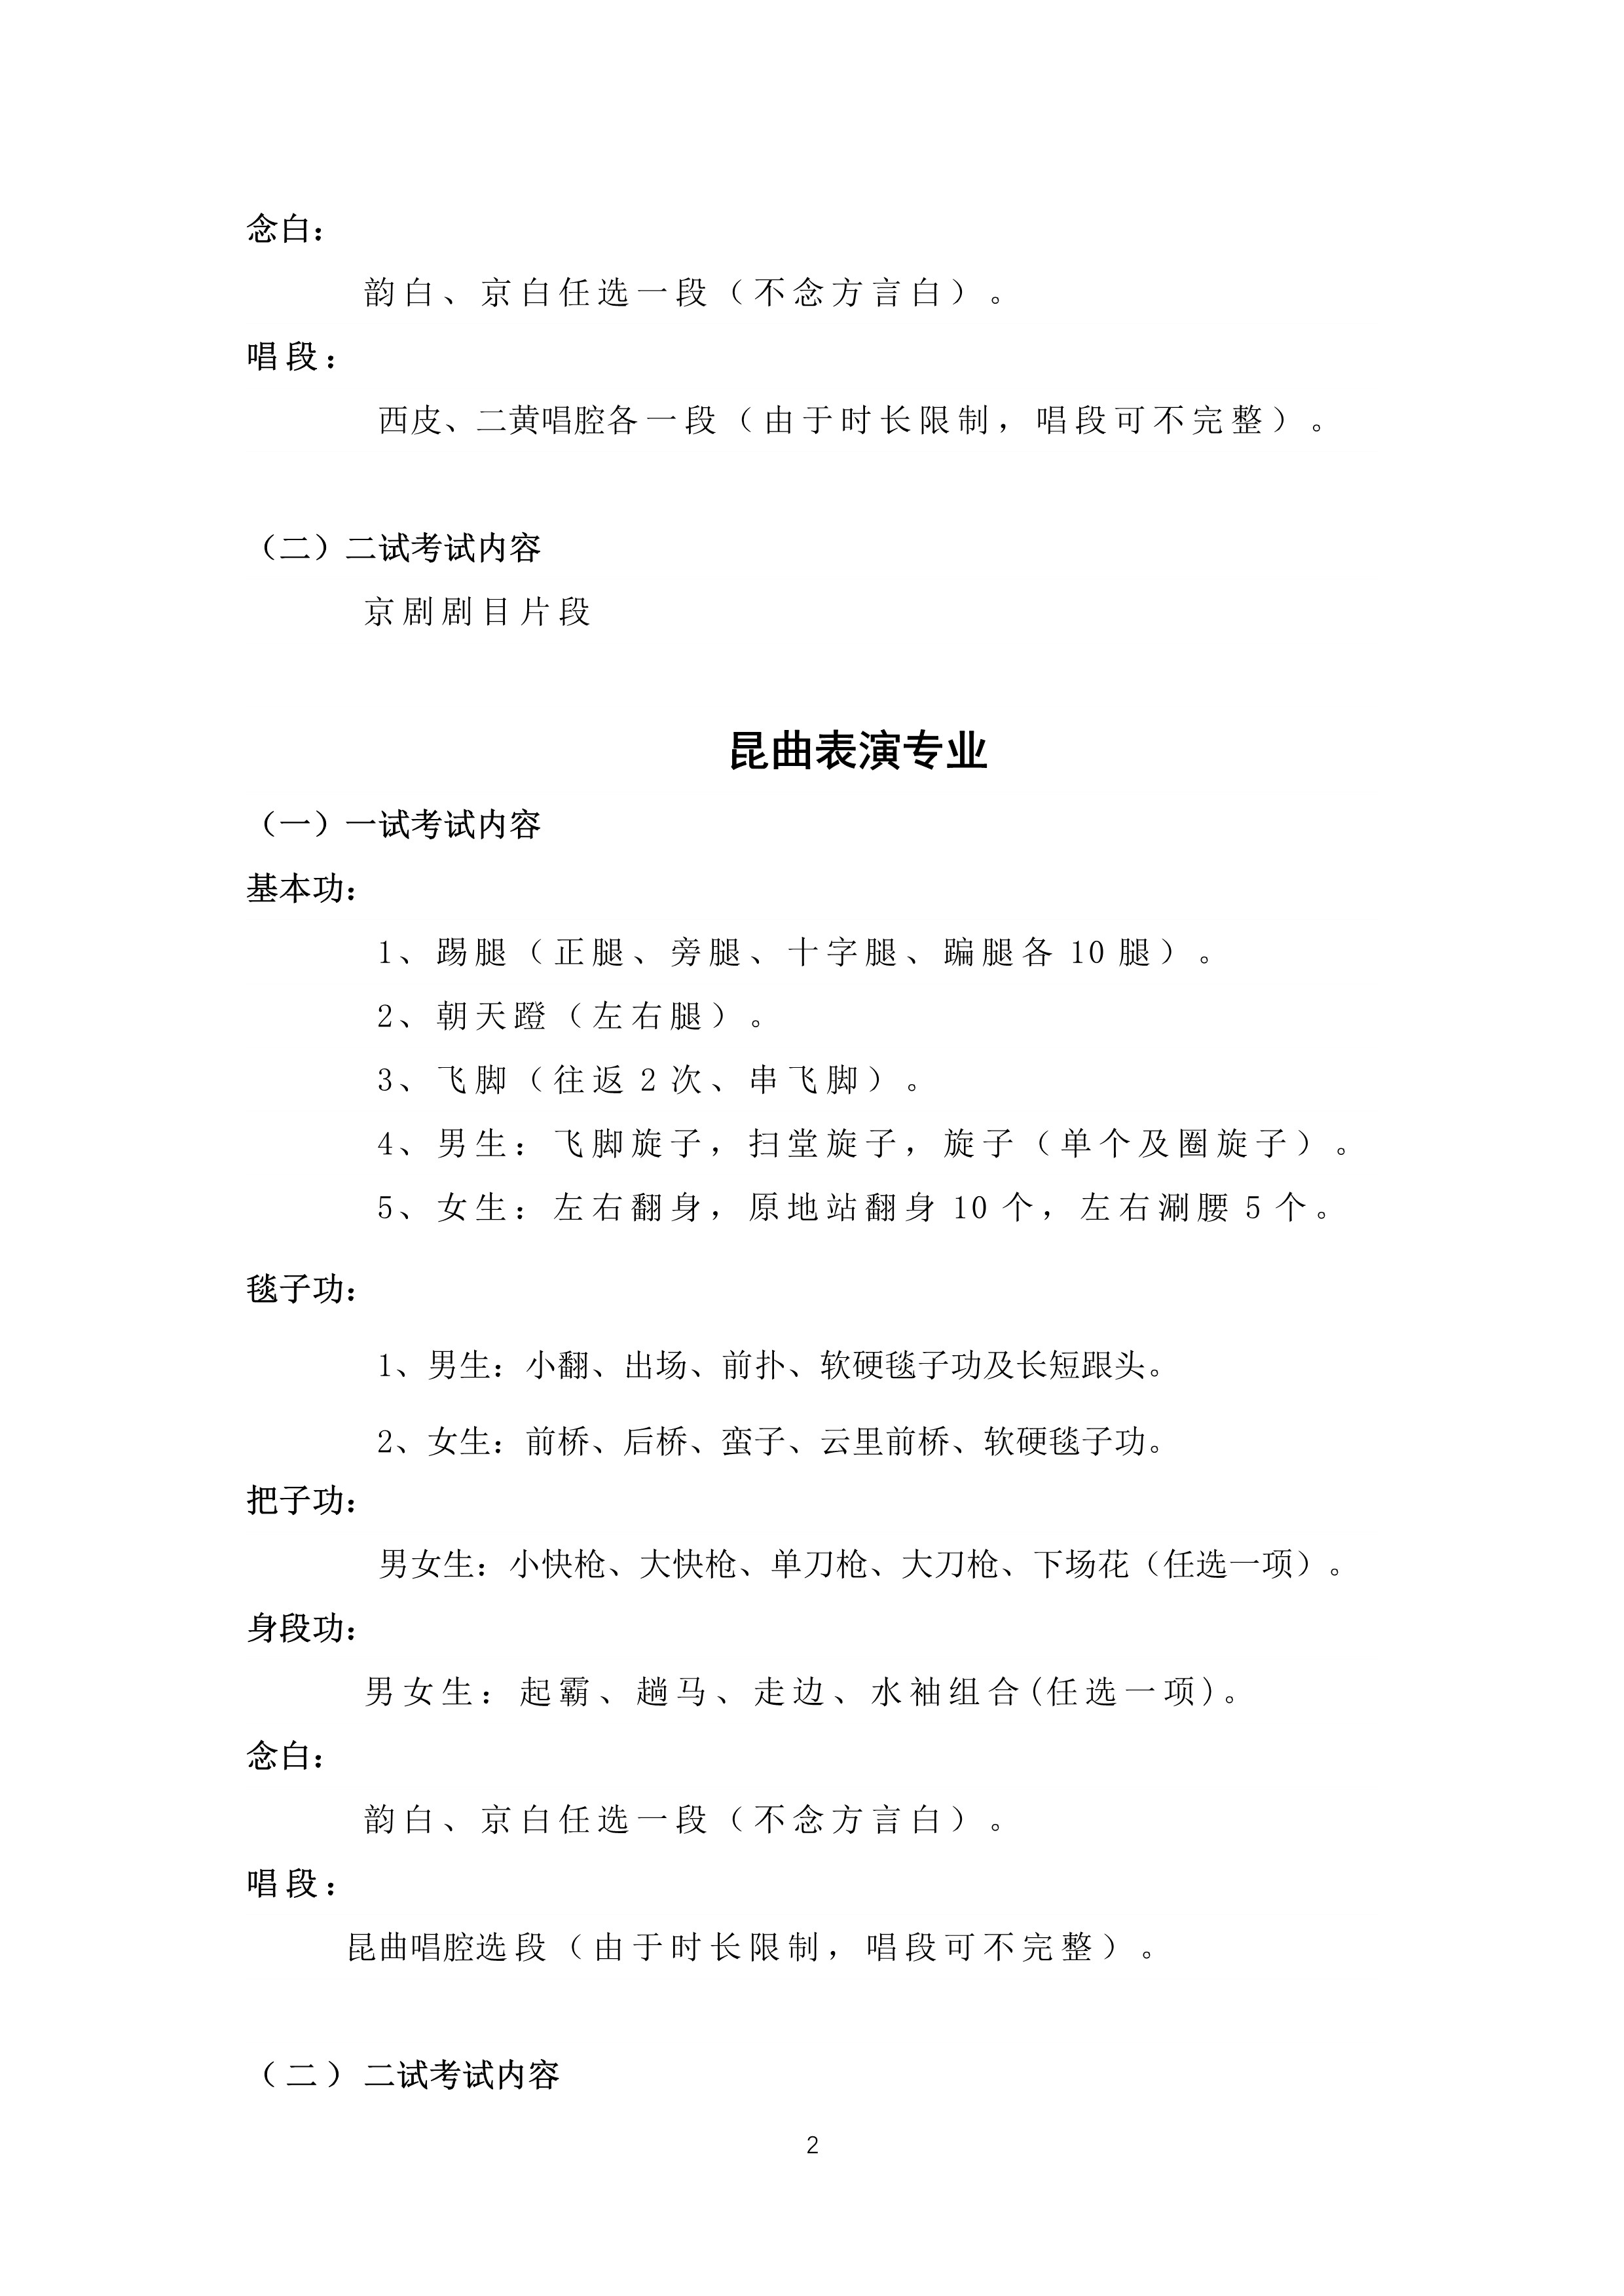 中国戏曲学院2023年本科招生京昆系专业考试内容与要求_2.jpg